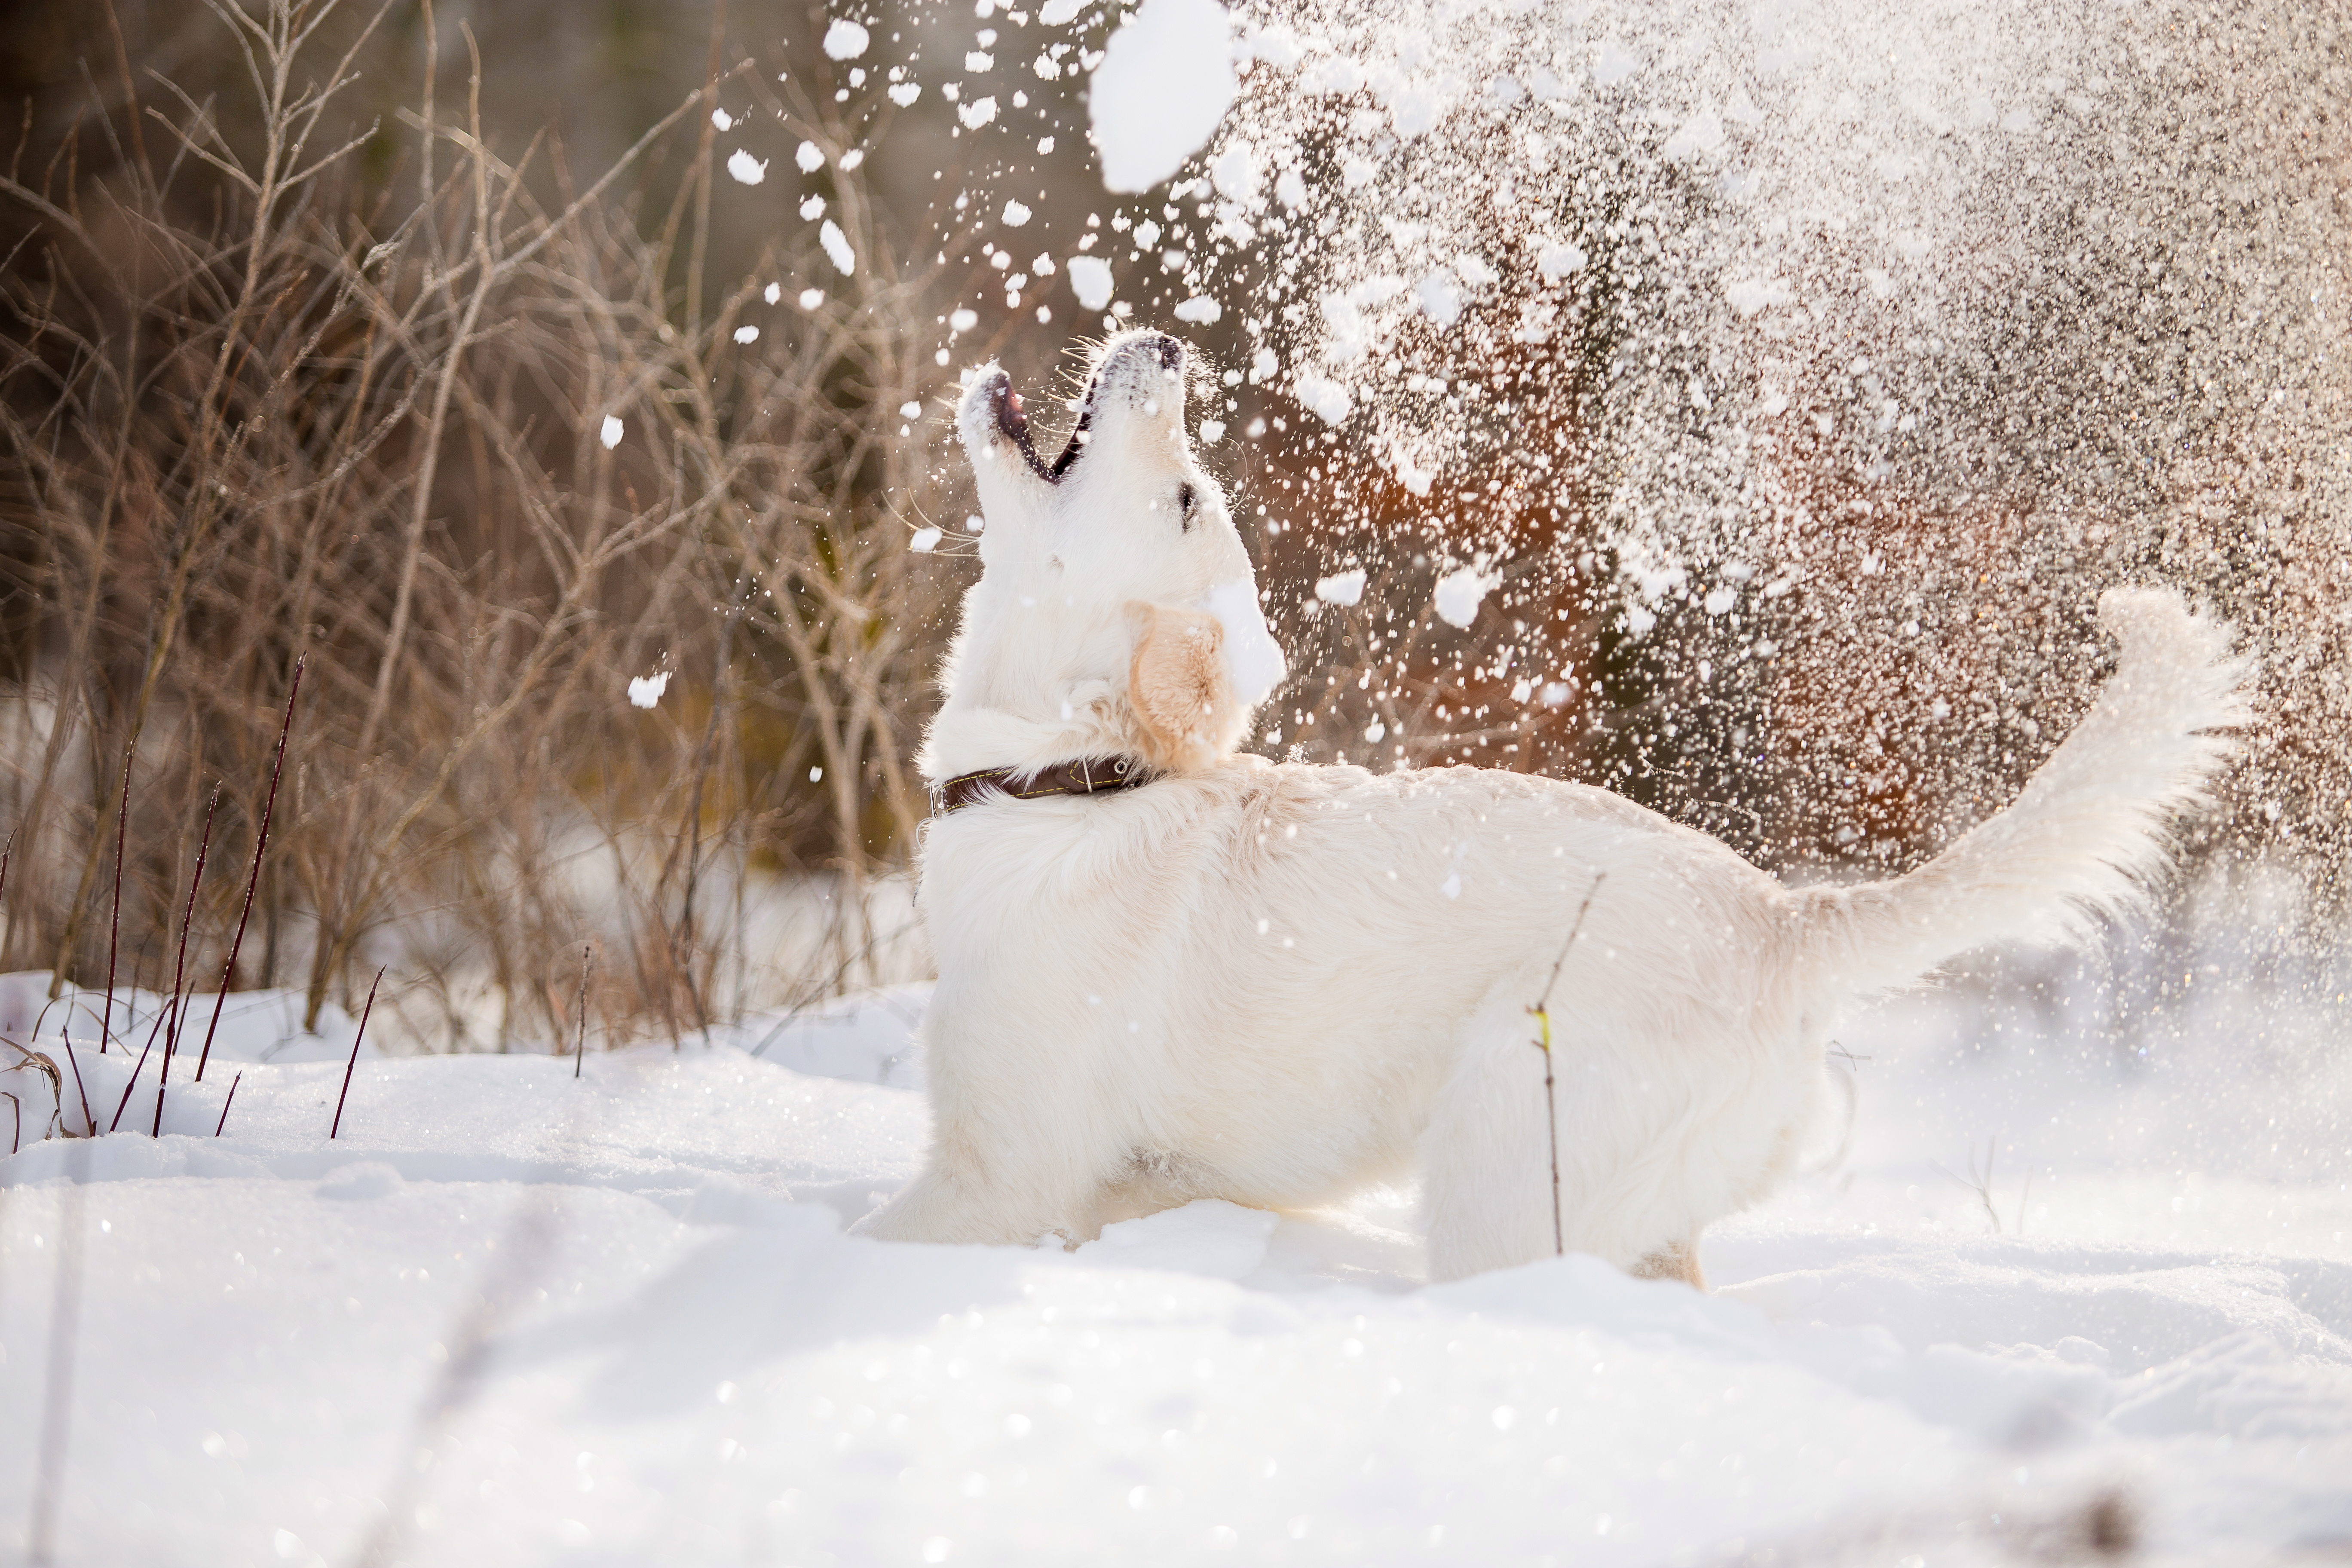 愛犬との雪遊び♪雪遊びのときに気を付けたい3つのポイント